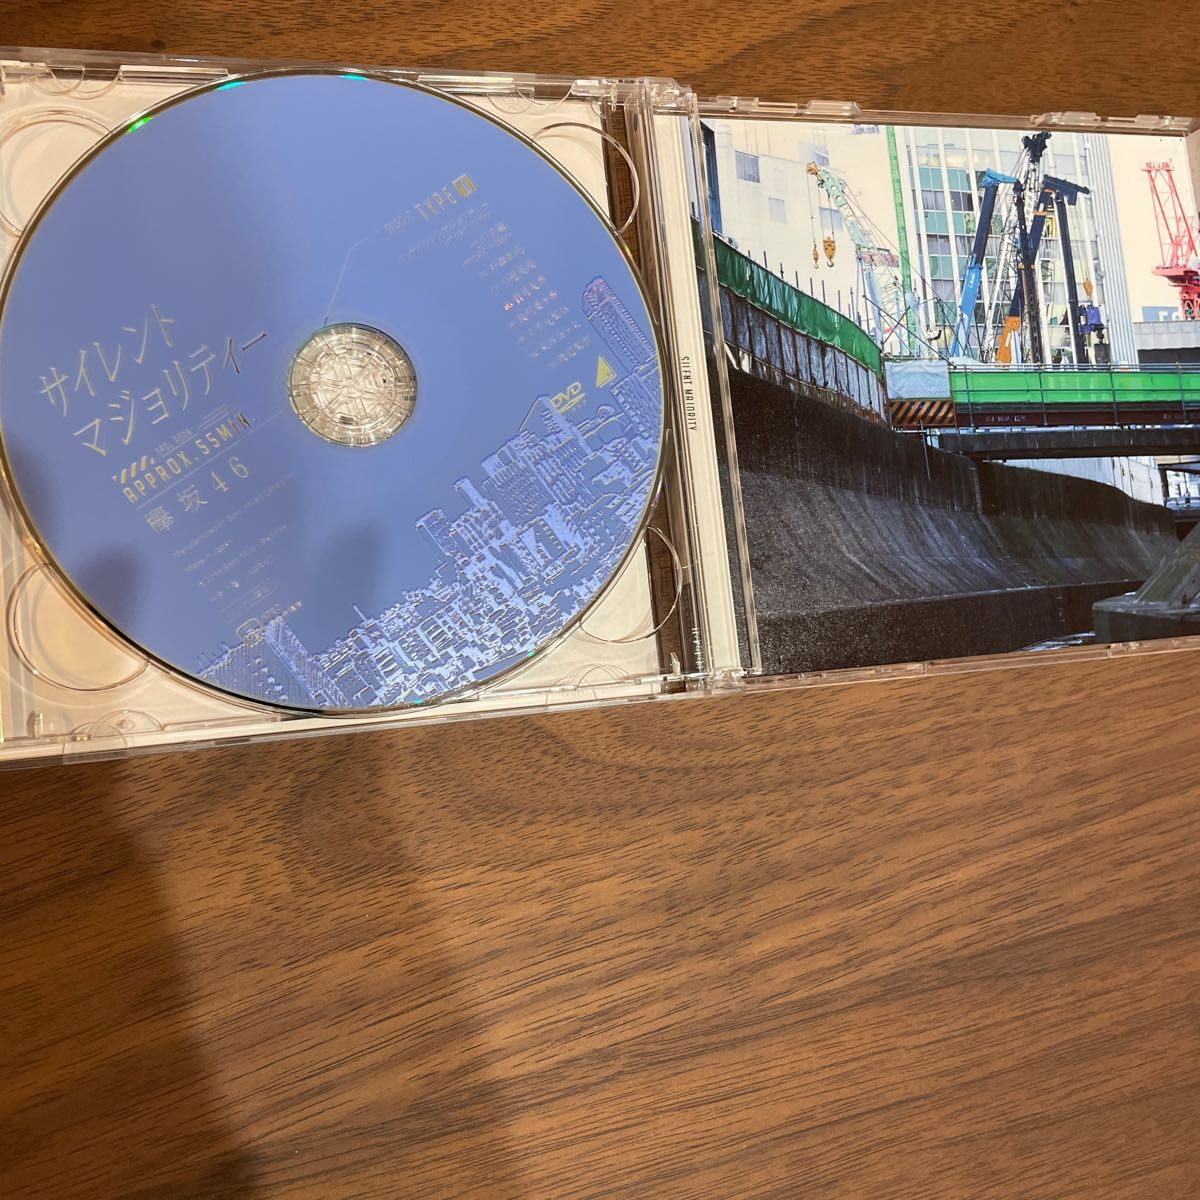 不協和音（TYPE-A) ［CD+DVD］サイレントマジョリティー（TYPE-A) ［CD+DVD］欅坂46 カード付き